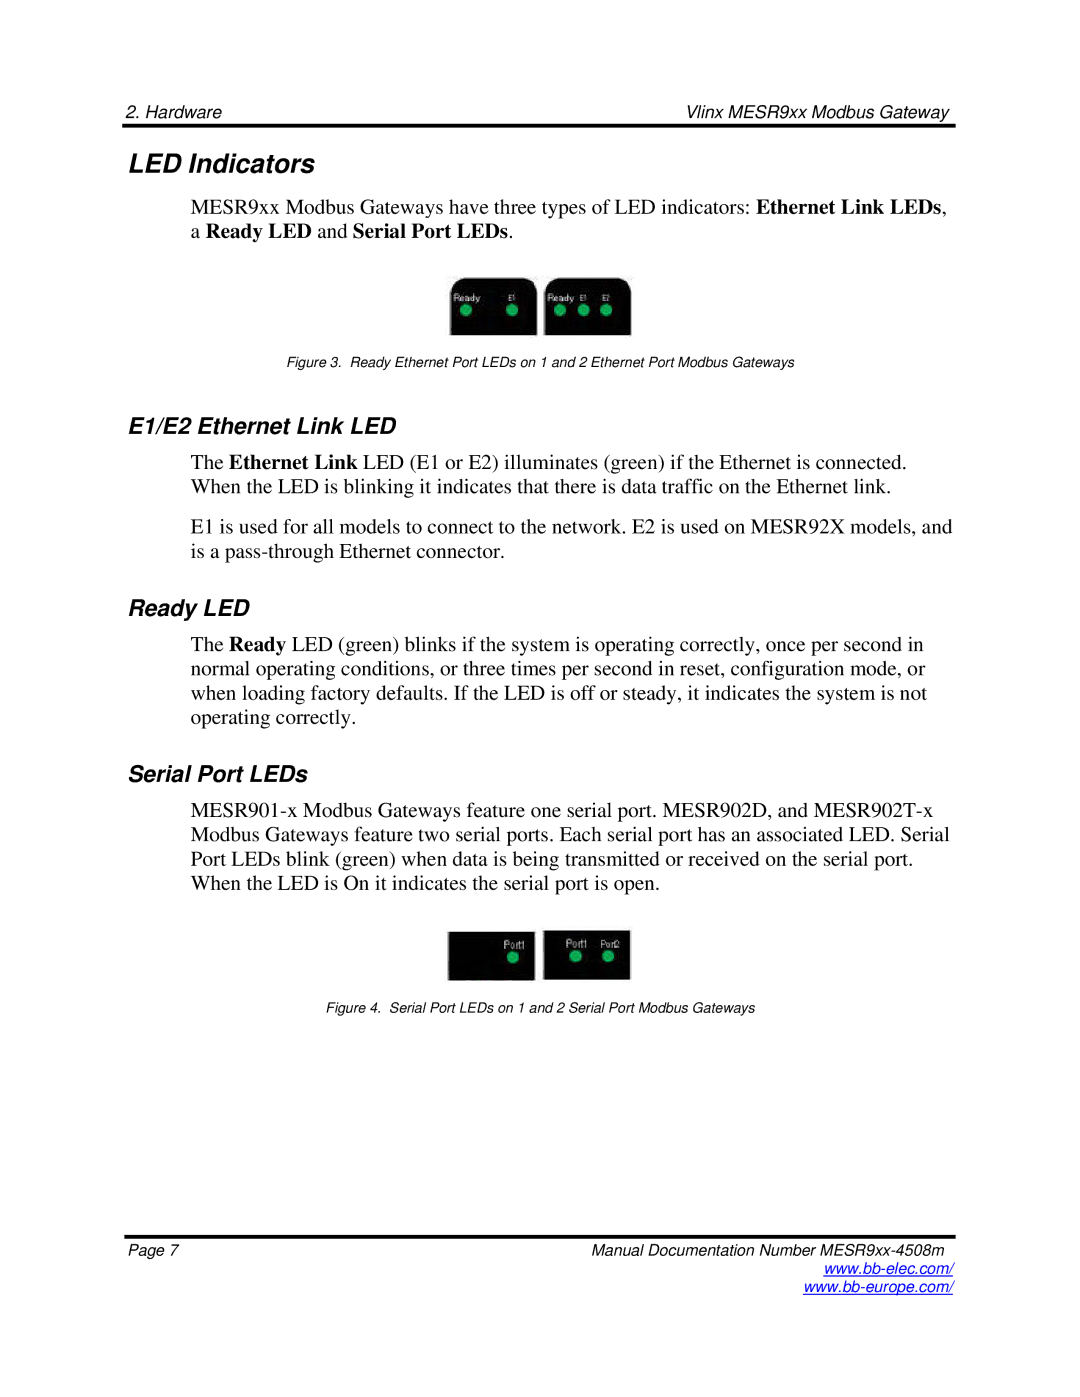 B&B Electronics MESR9xx manual LED Indicators, E1/E2 Ethernet Link LED, Ready LED, Serial Port LEDs 